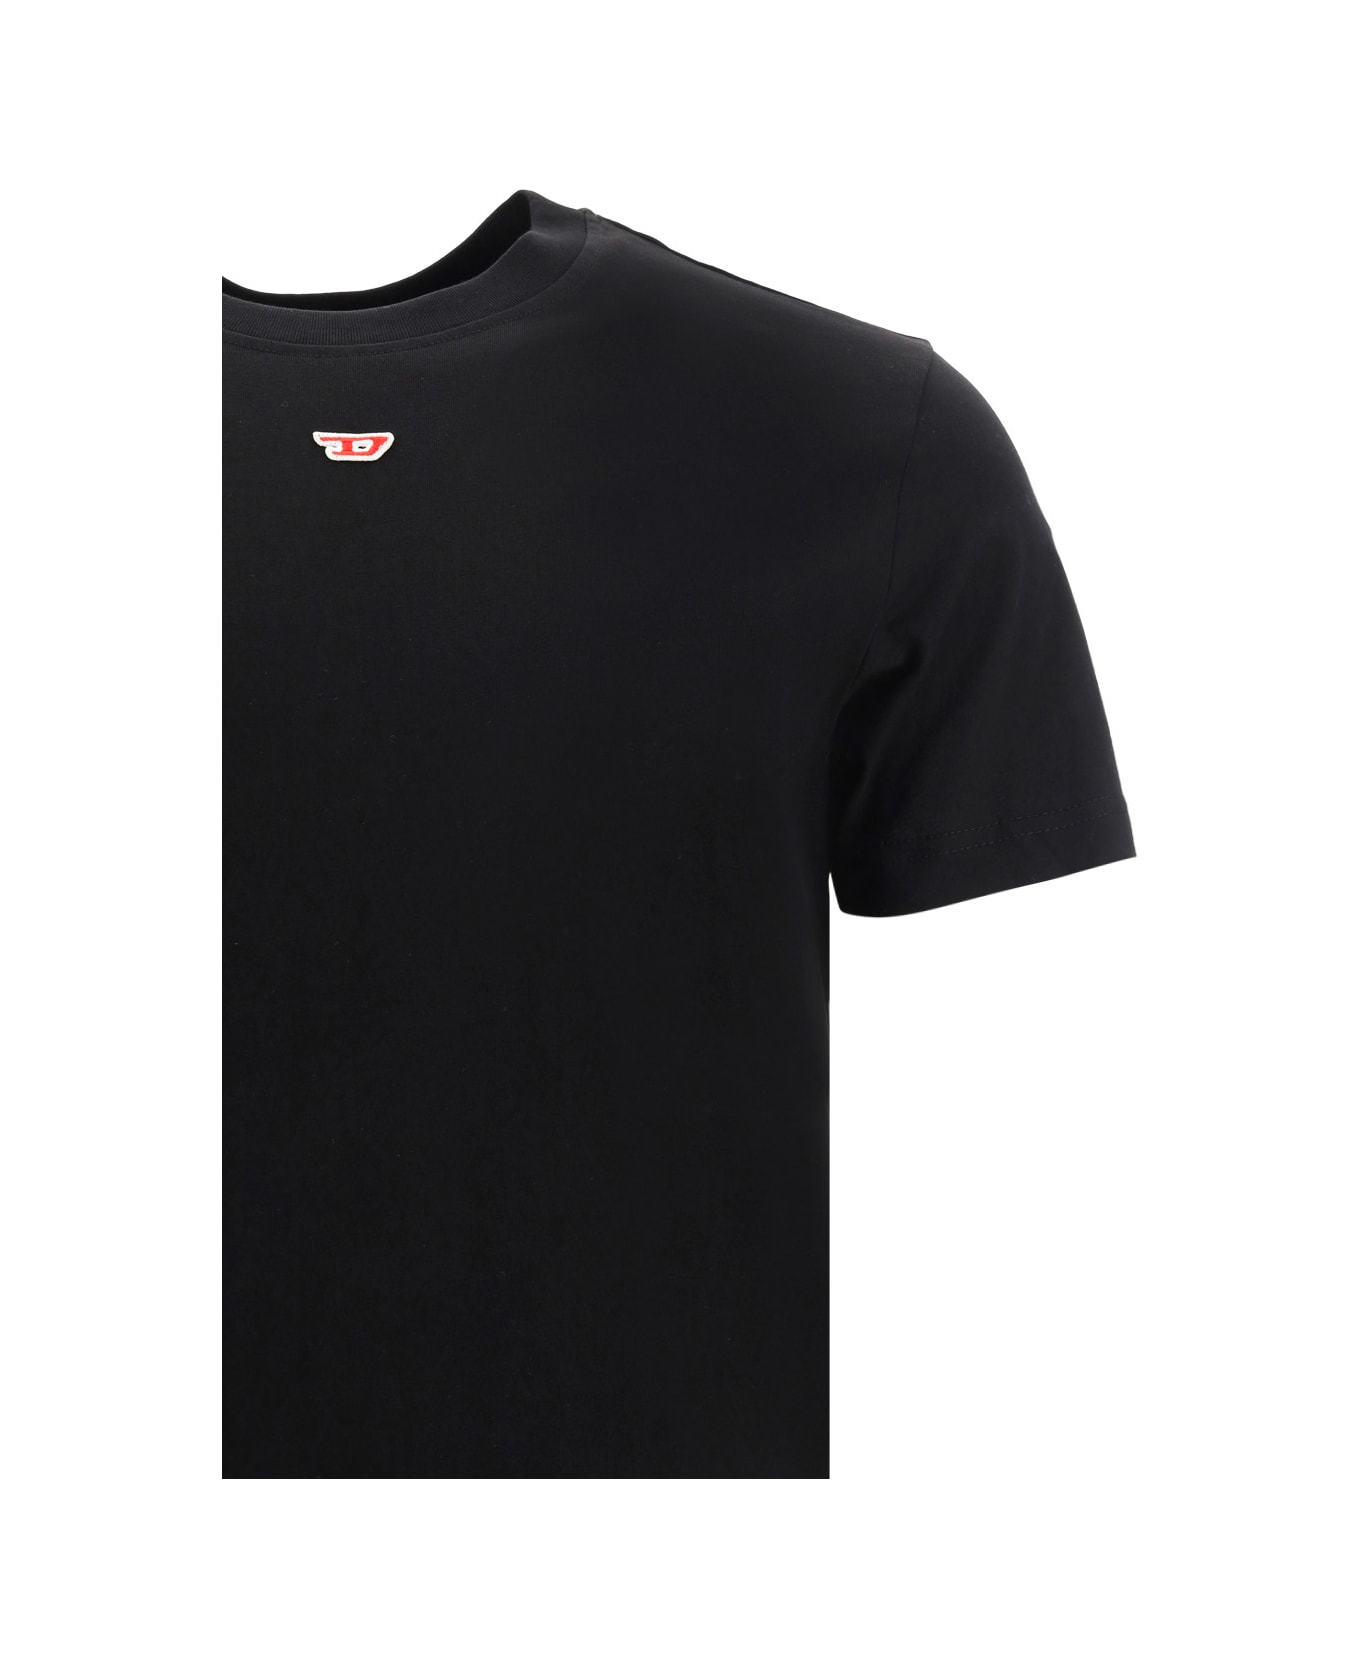 Diesel T-diegor T-shirt - Black